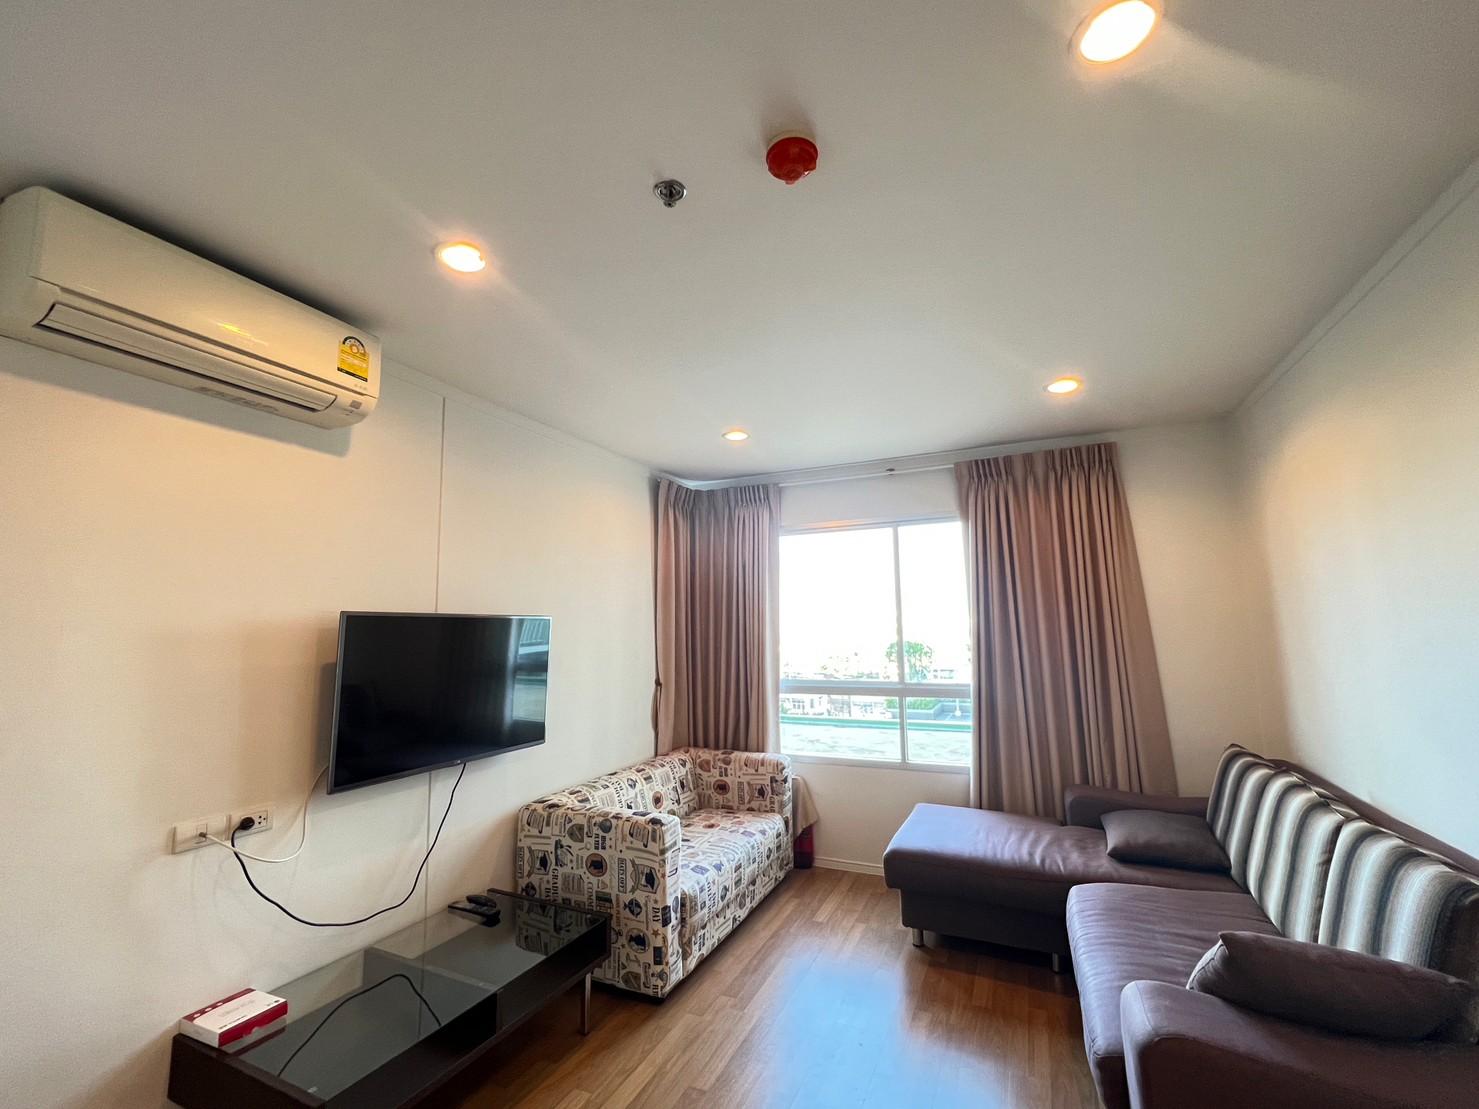 เช่าคอนโด ลุมพินี เพลส สุขสวัสดิ์ - พระราม2 คอนโดมิเนียม - Condo Rental Lumpini Place Suksawat - Rama2 condominium - 2645016